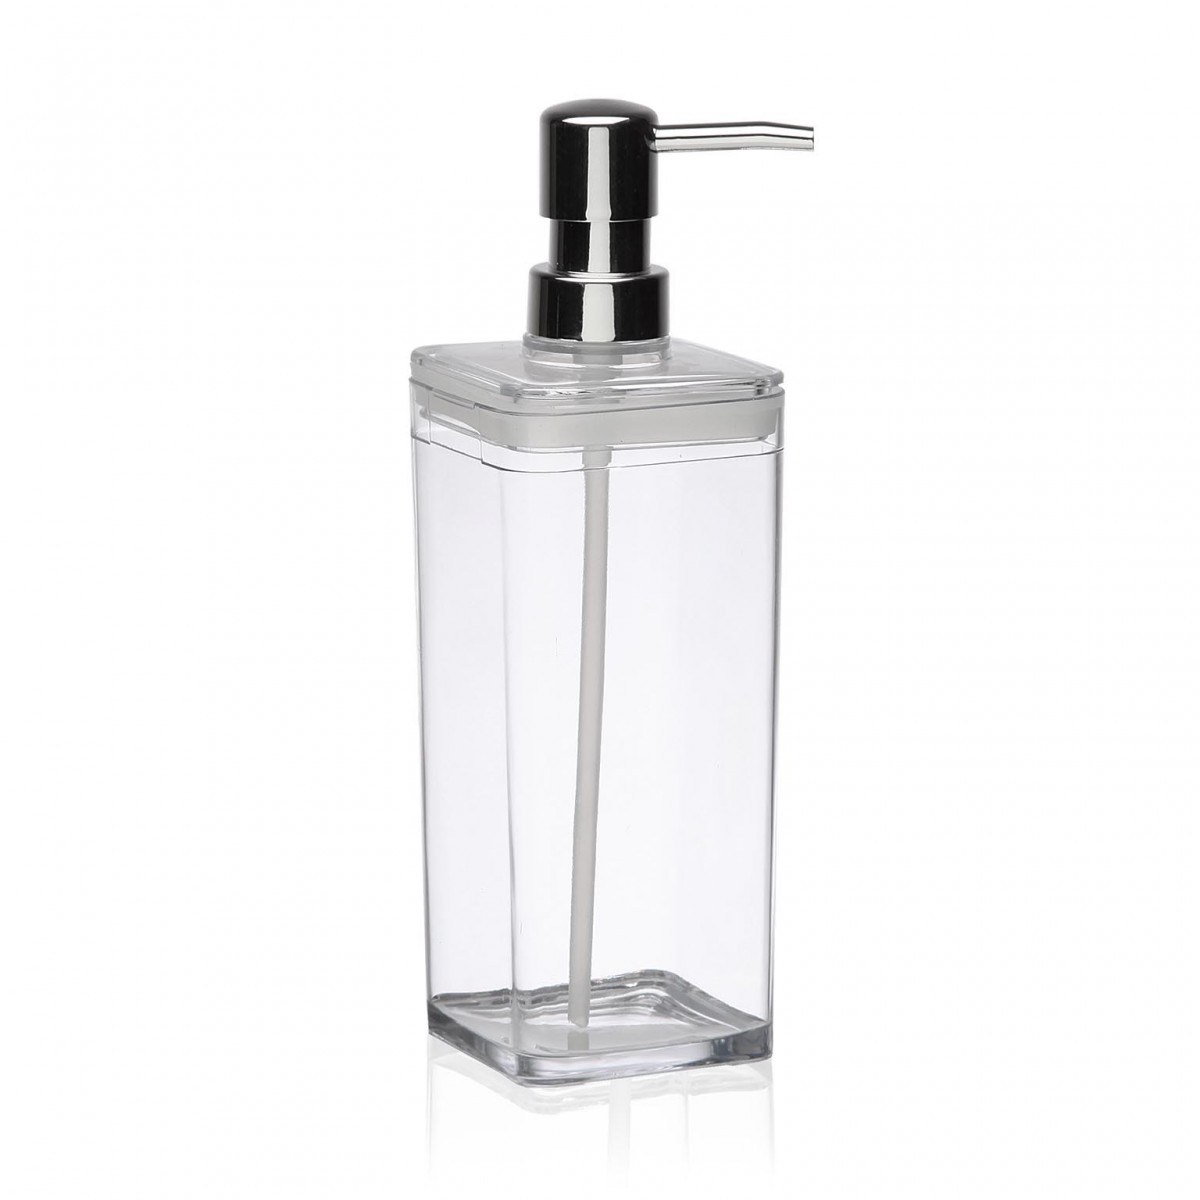 ONEVER Dispensador de jabón Transparente de 800 ml Dispensador de jabón líquido líquido Dispensador de jabón/Botella de plástico para baño de Cocina 